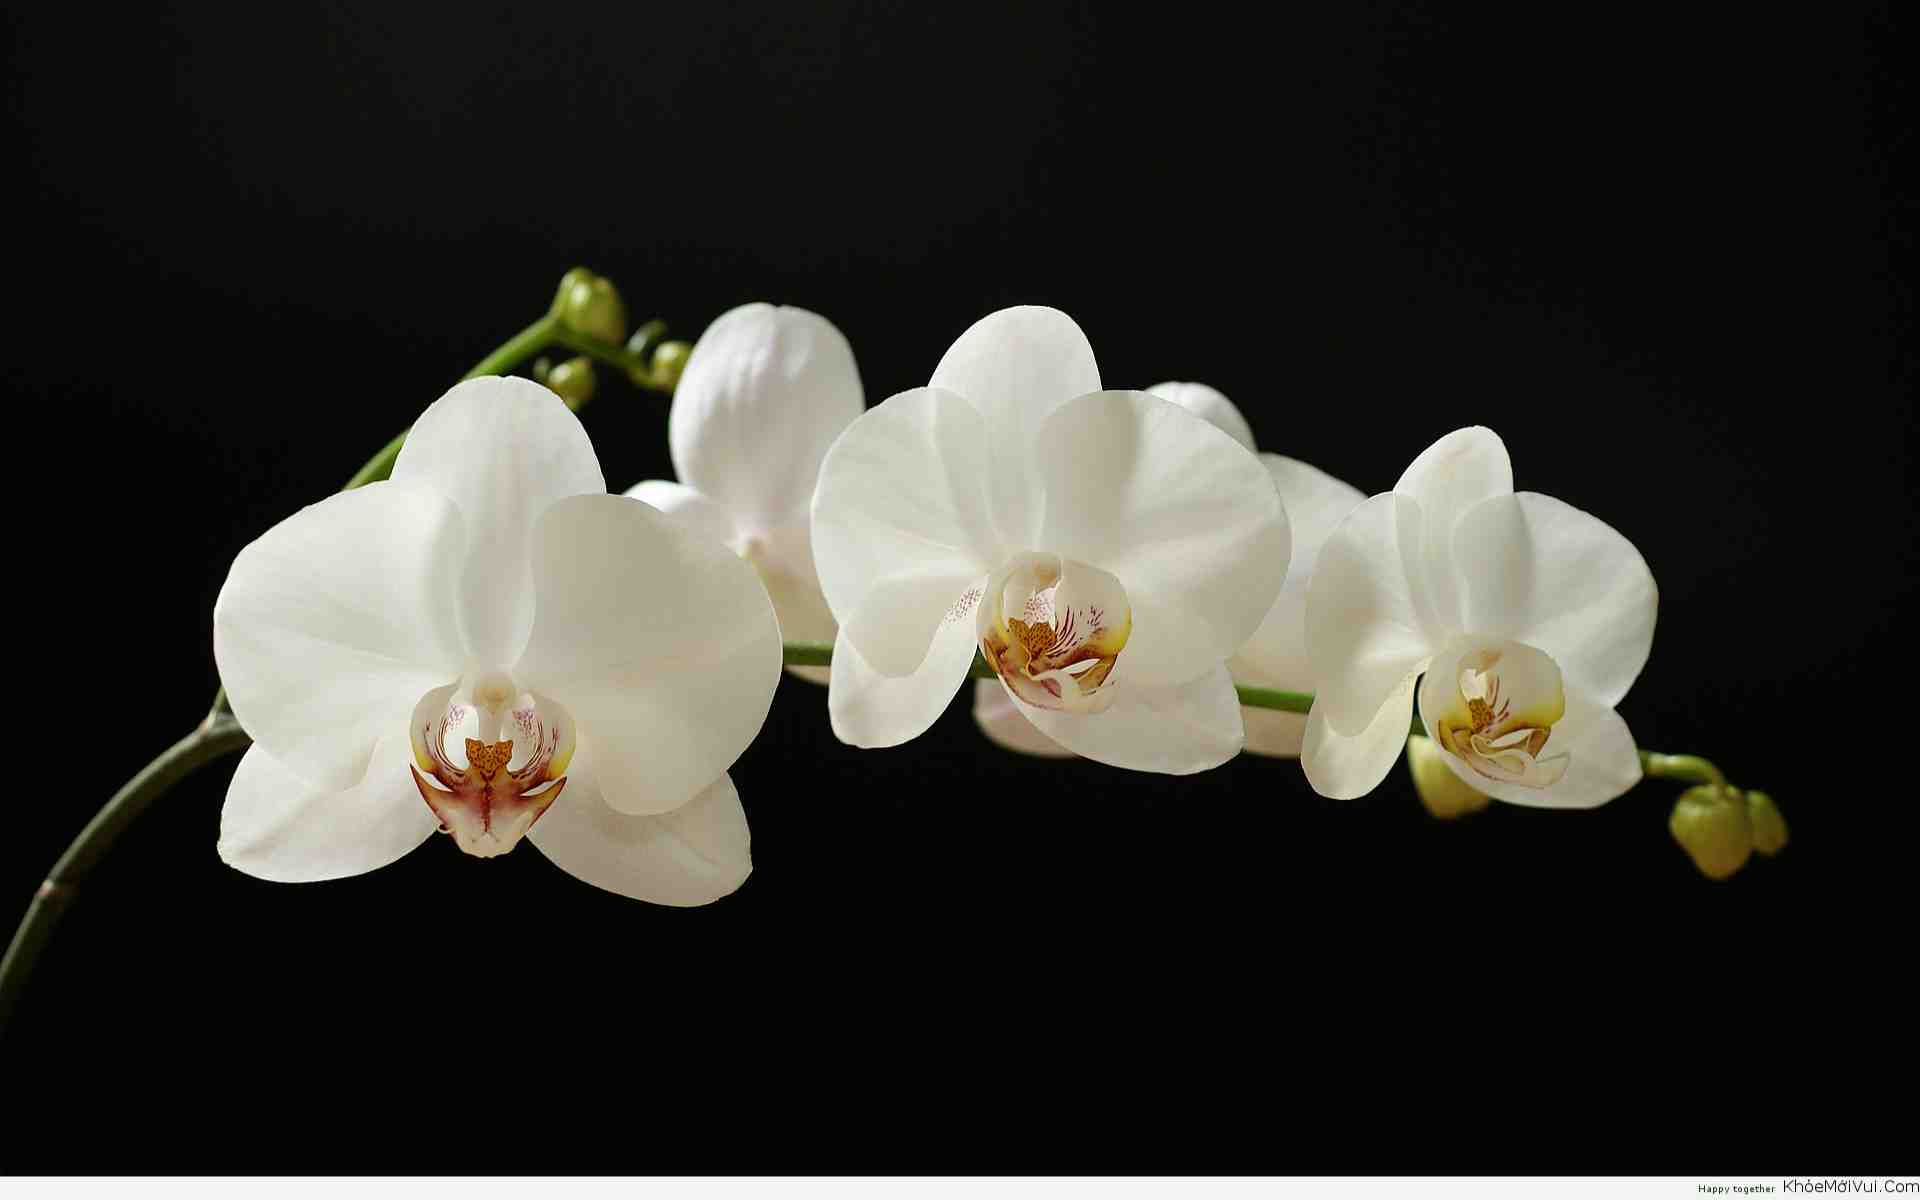 Hình nền hoa phong lan sẽ mang đến cho bạn cảm giác yên tĩnh và thư thái khi dùng máy tính. Với những bức ảnh hoa phong lan tuyệt đẹp, bạn sẽ được tận hưởng vẻ đẹp tự nhiên trong không gian làm việc. Hãy tải về hình nền hoa phong lan để trang trí màn hình máy tính của mình.